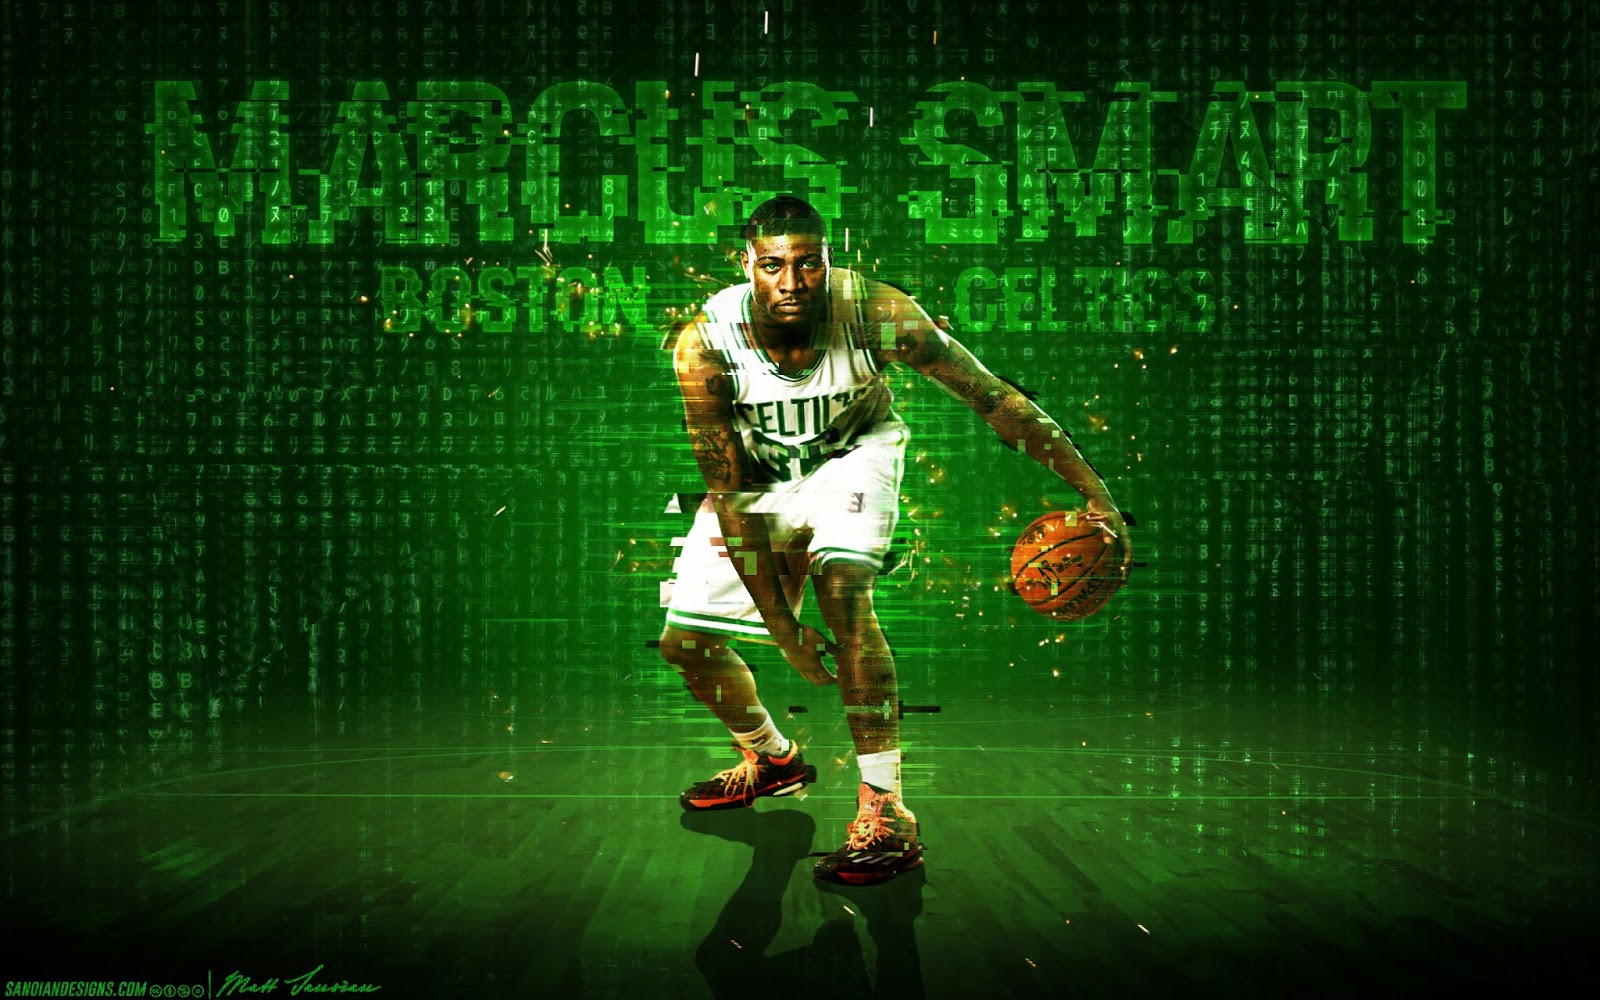 Nike Wallpaper, Kyrie Irving #11, Boston Celtics on Behance